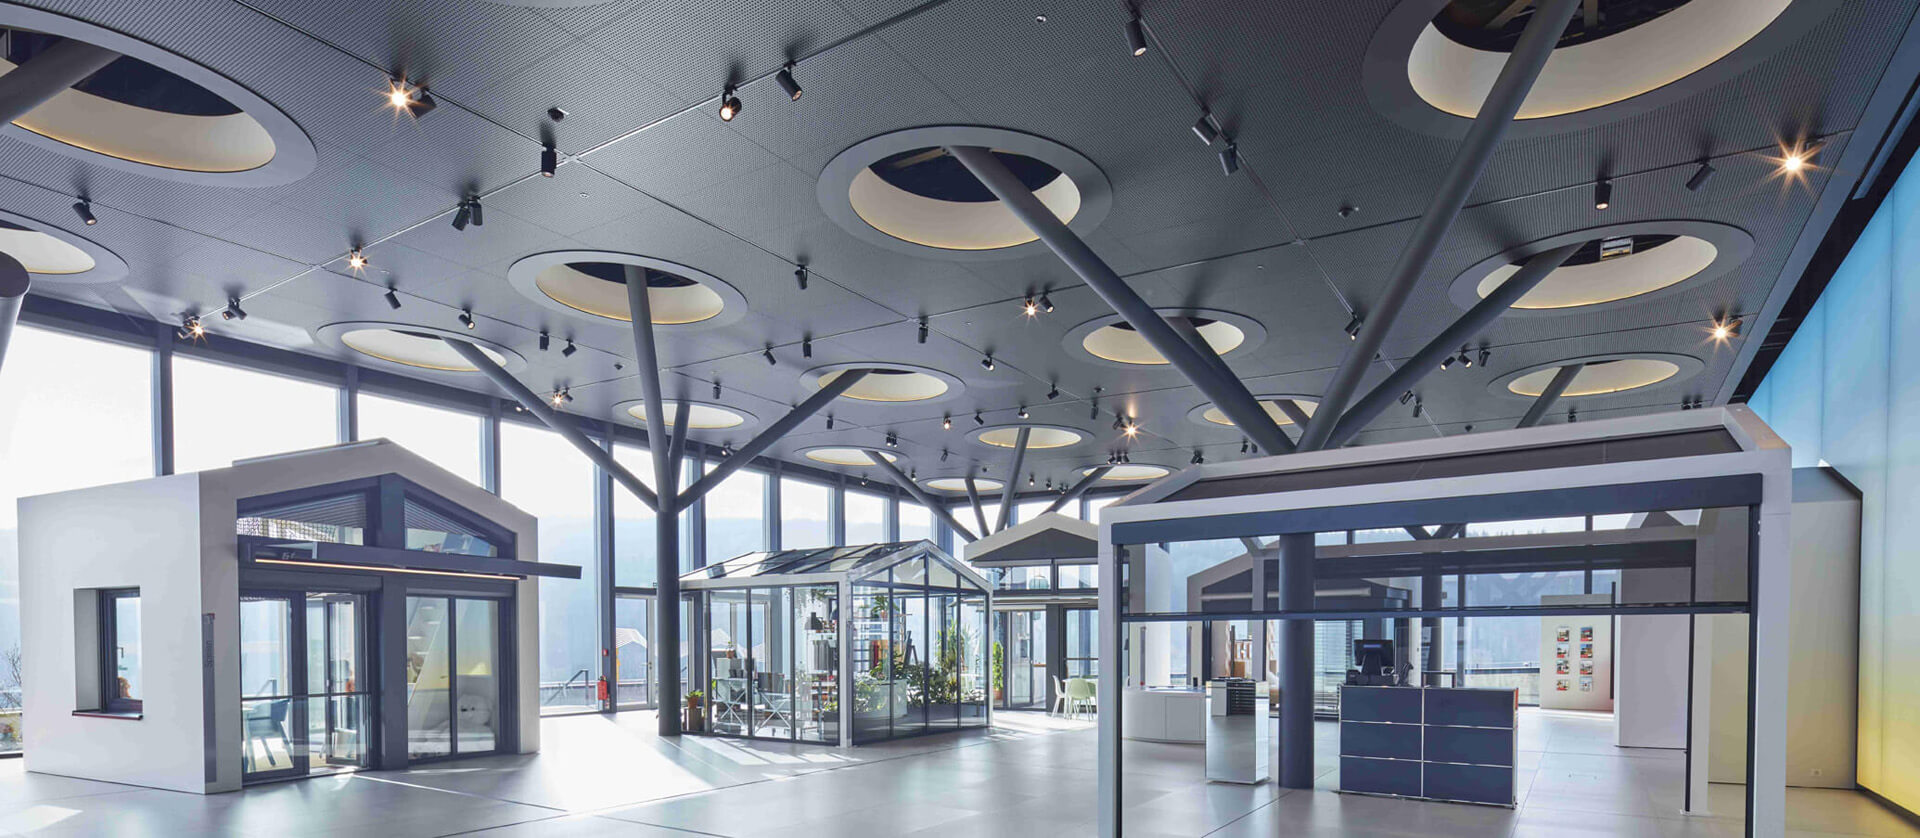 Warema Bürogebäude und Ausstelliungshalle Sunforum Wertheim Innenansicht Decke